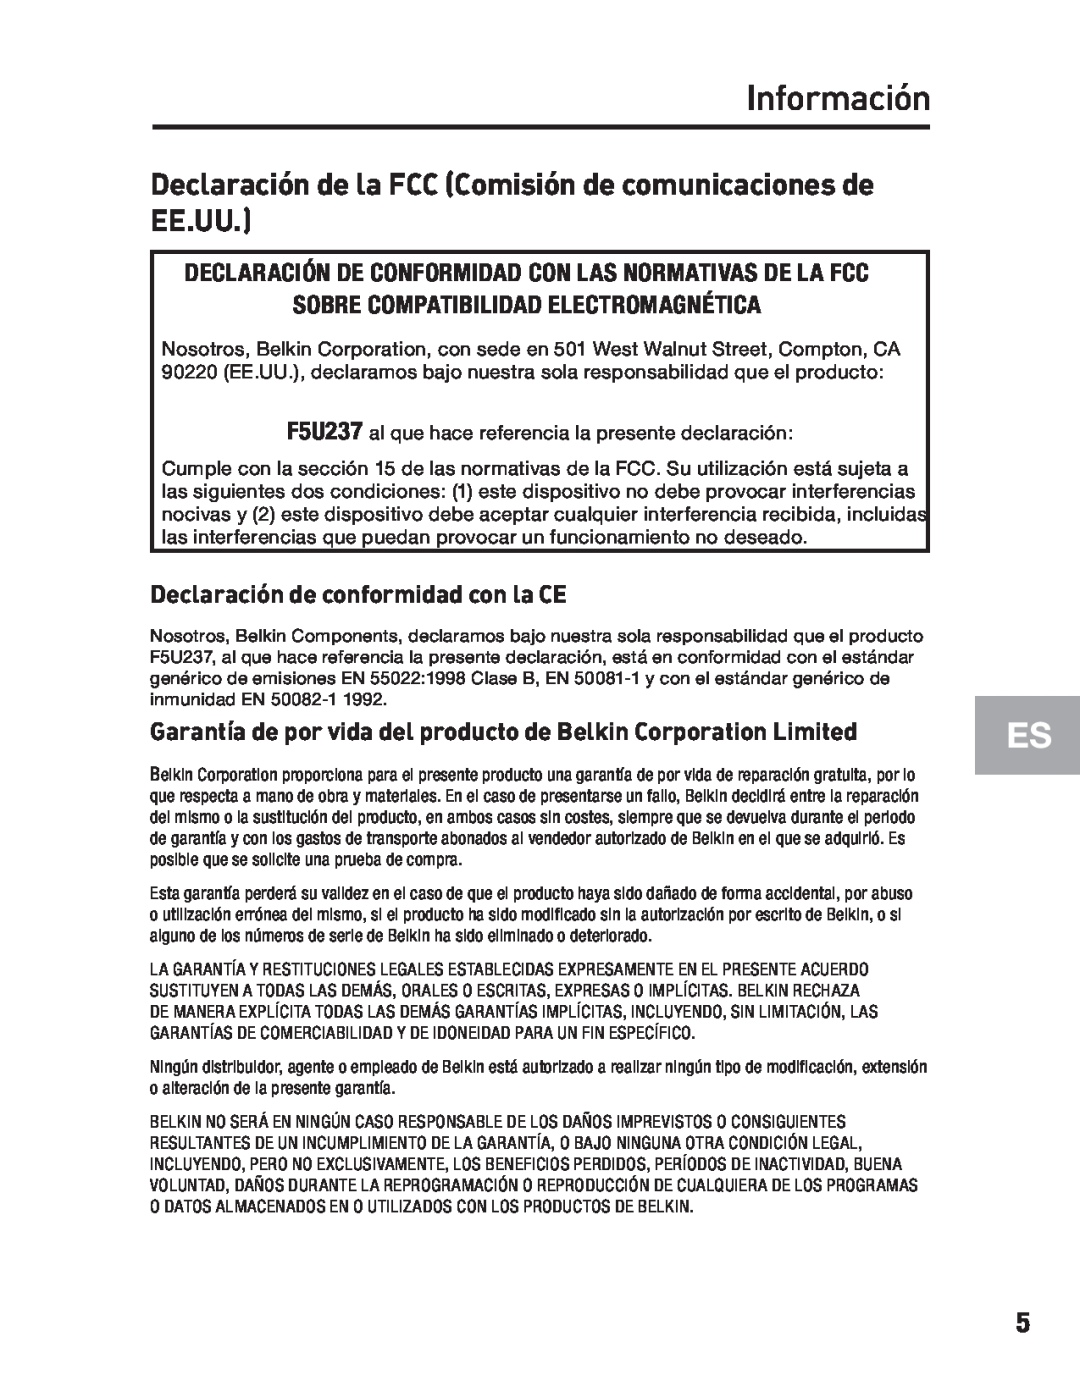 Belkin F5U237 Información, Declaración de la FCC Comisión de comunicaciones de EE.UU, Declaración de conformidad con la CE 